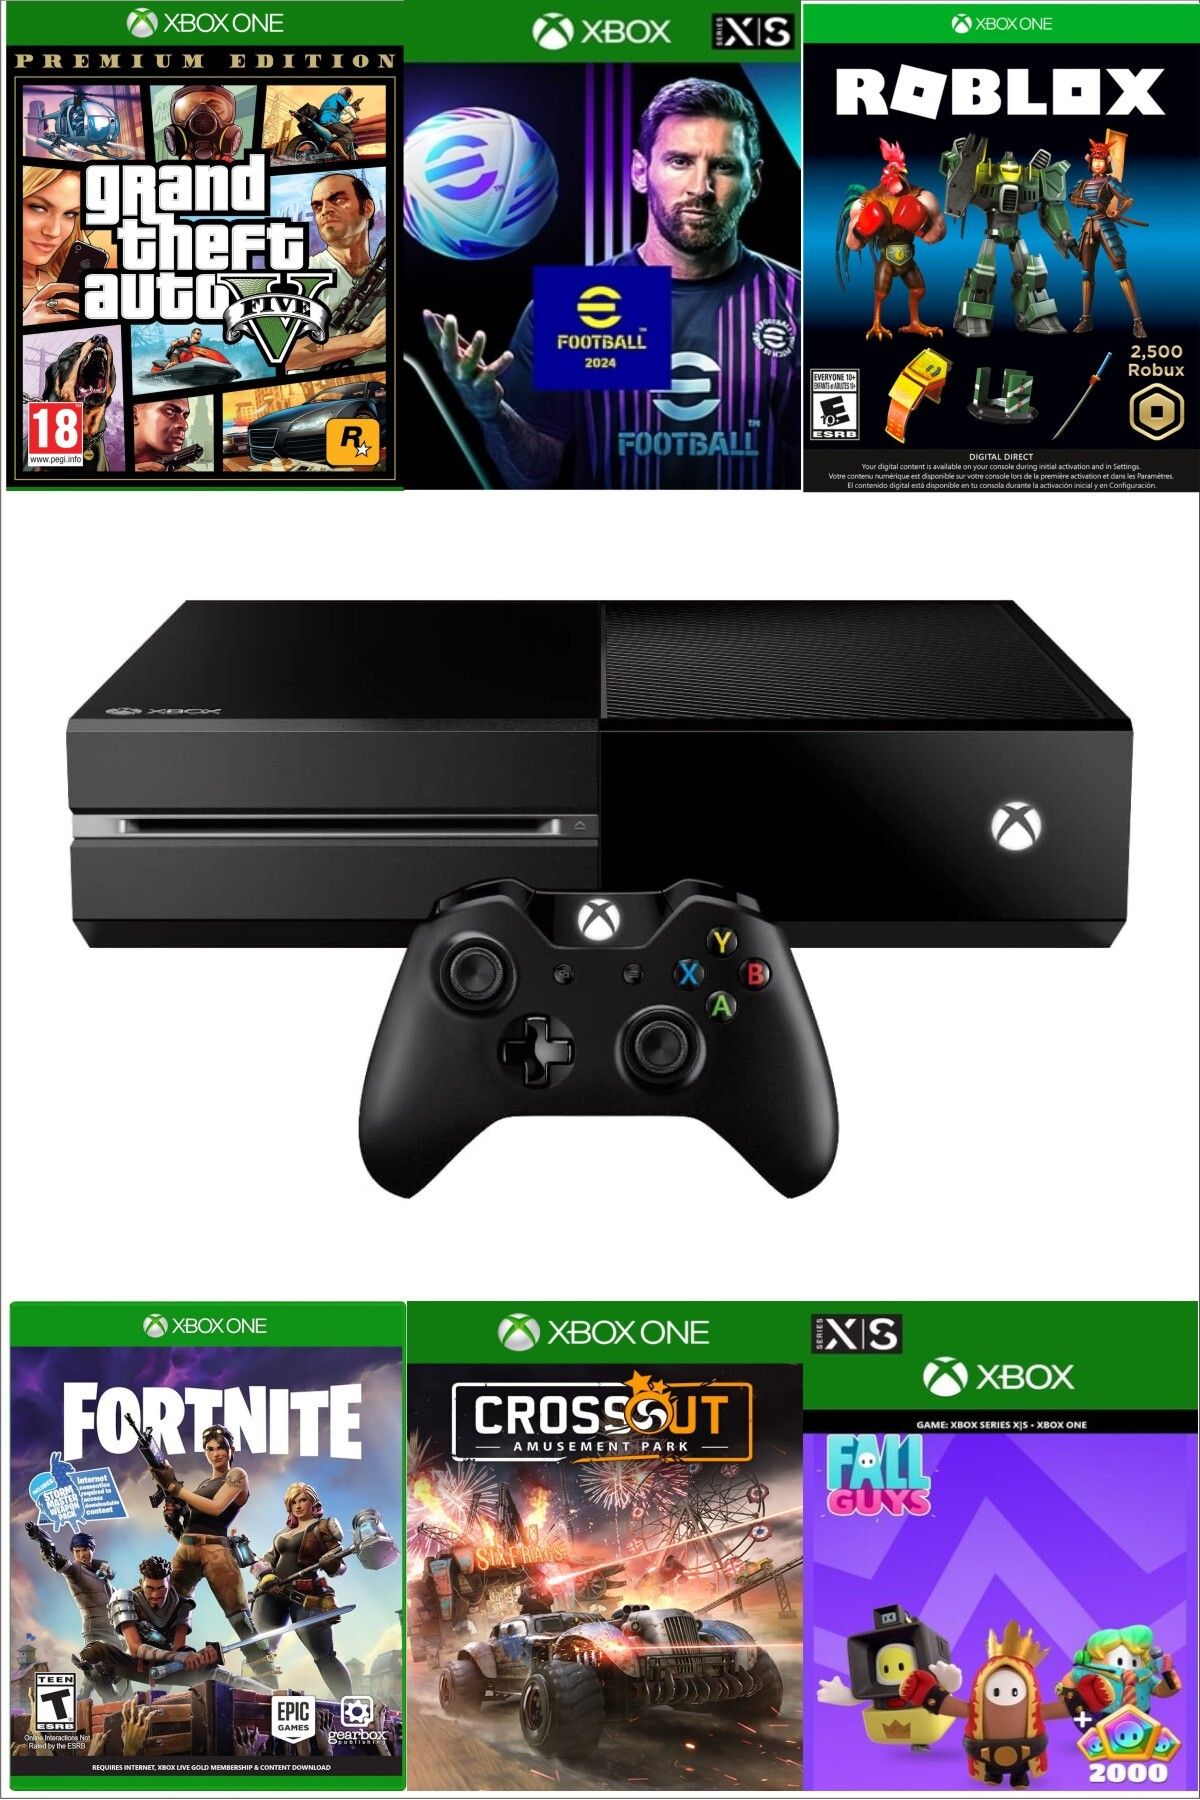 Microsoft XBOX One 500 Gb - Teşhir Cihazı 6 Ay Garantili - GTA 5 Dahil 10 Dijital Oyun Hediyeli